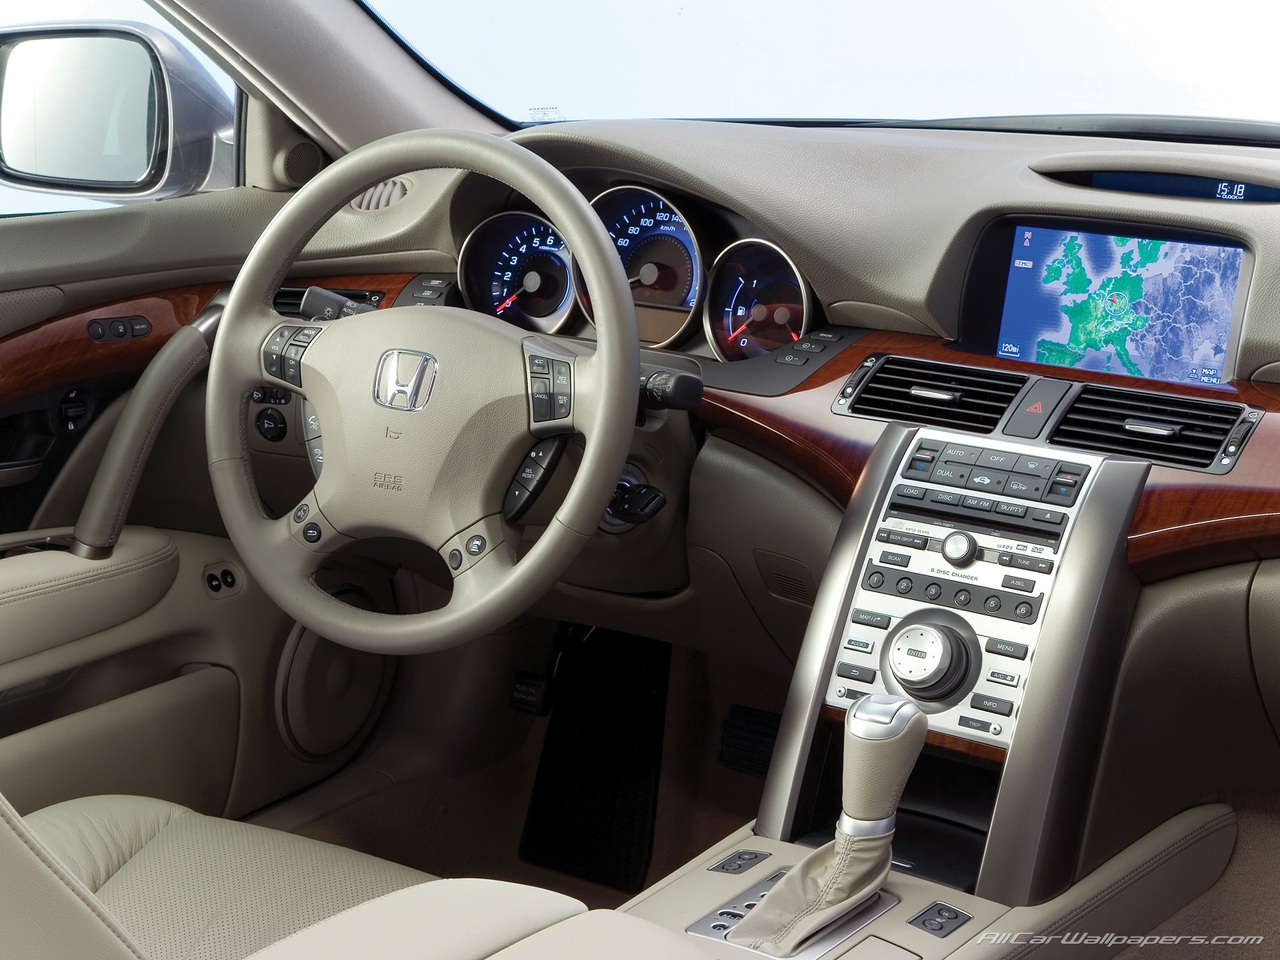 Honda Legend Review And Photos